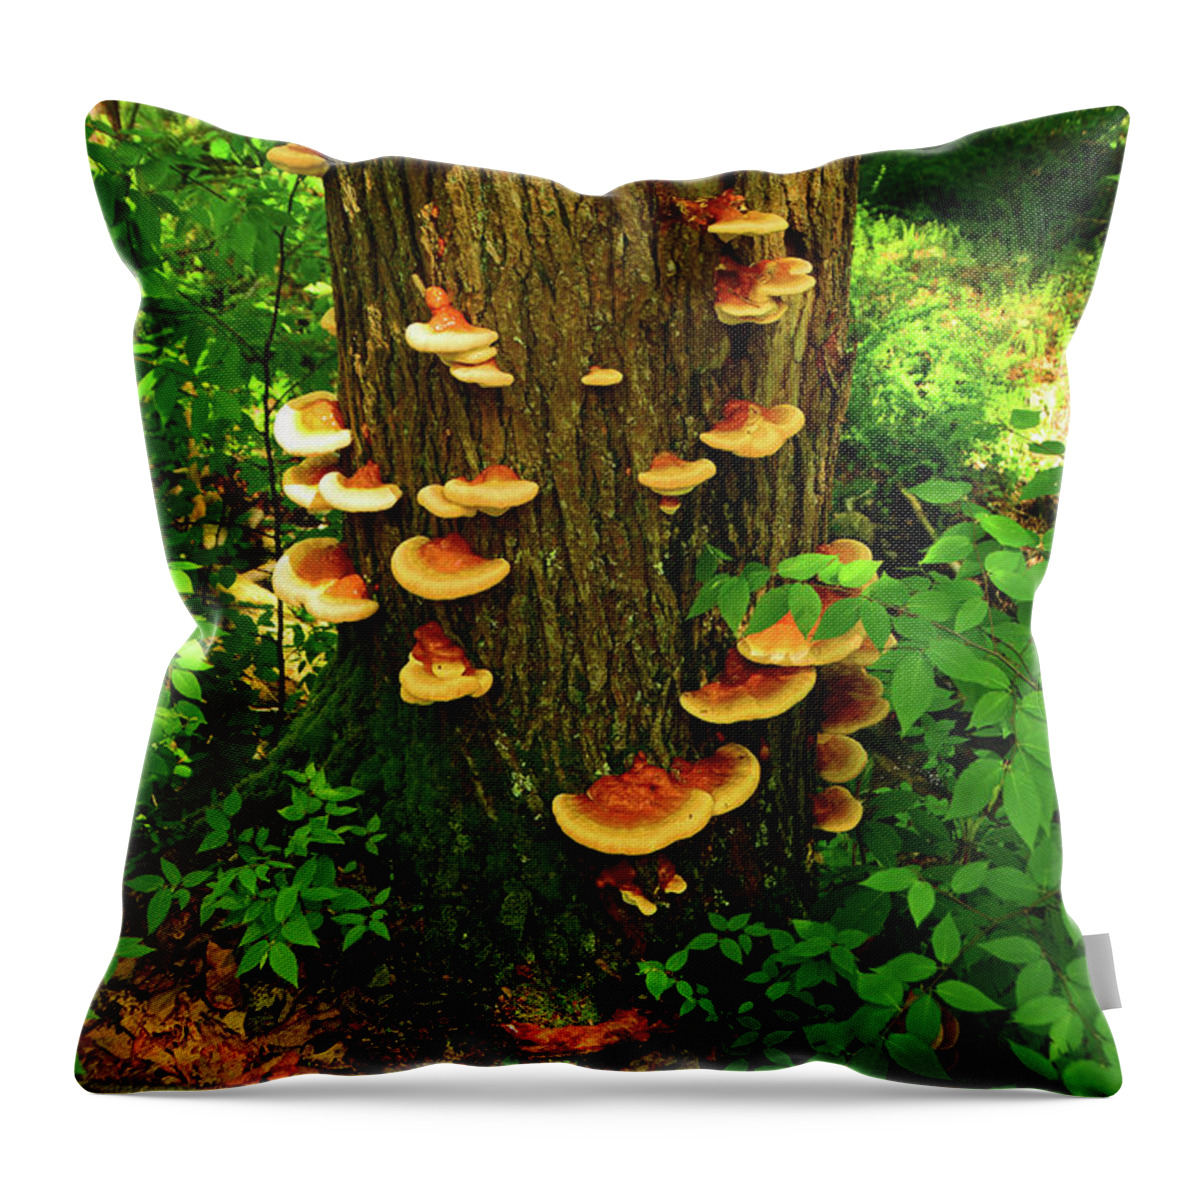 Mushrooms On Nj Appalachian Trail Throw Pillow featuring the photograph Mushrooms on NJ Appalachian Trail by Raymond Salani III